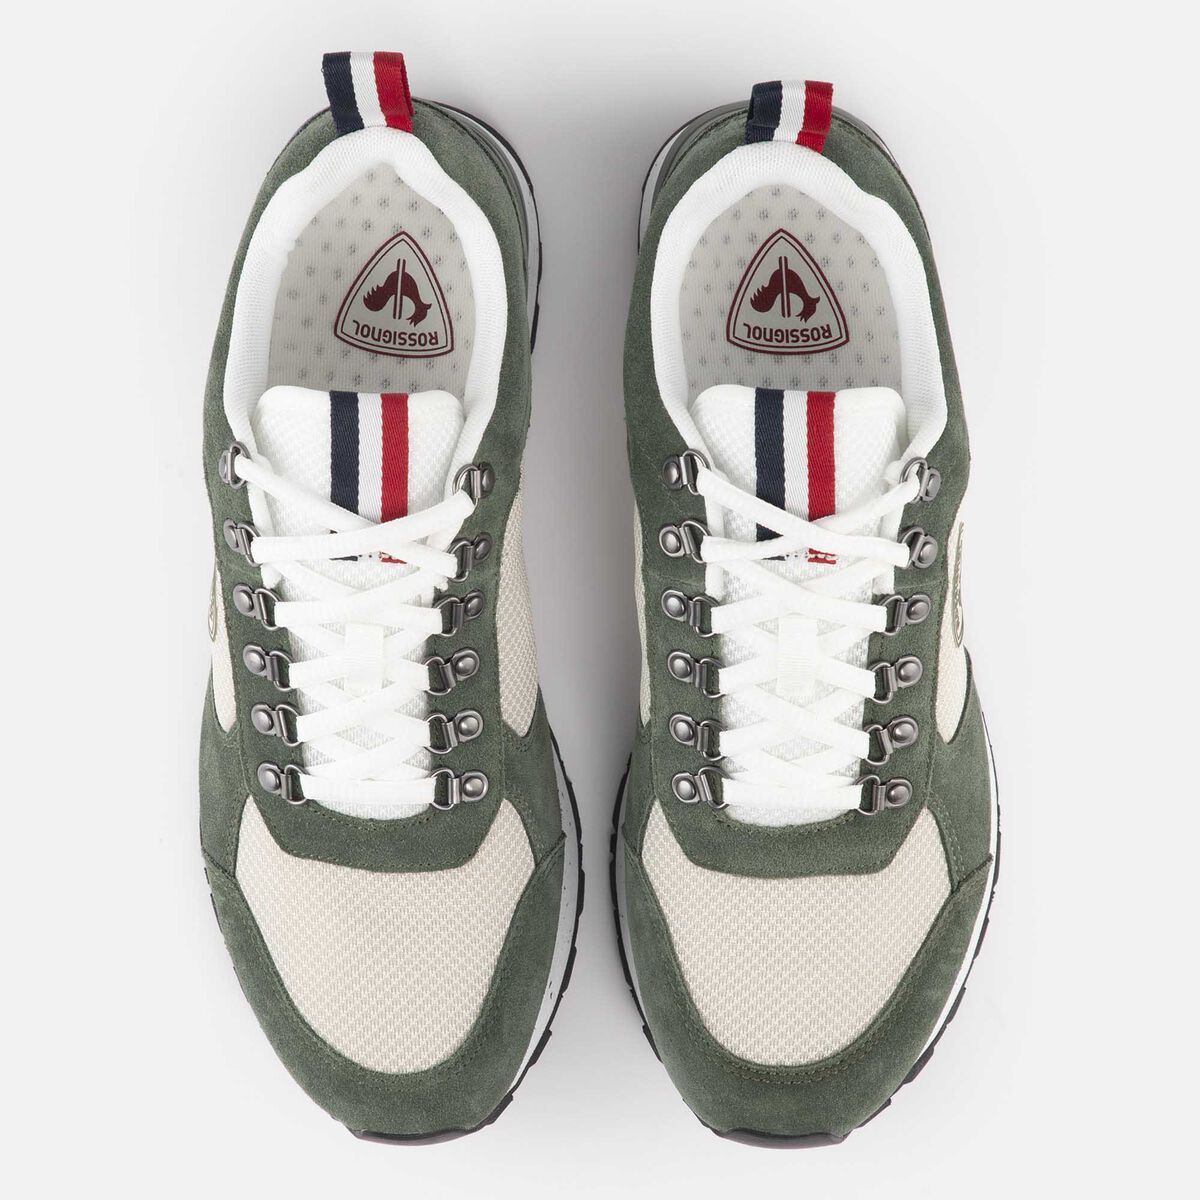 Rossignol Men's Heritage Special green sneakers grey